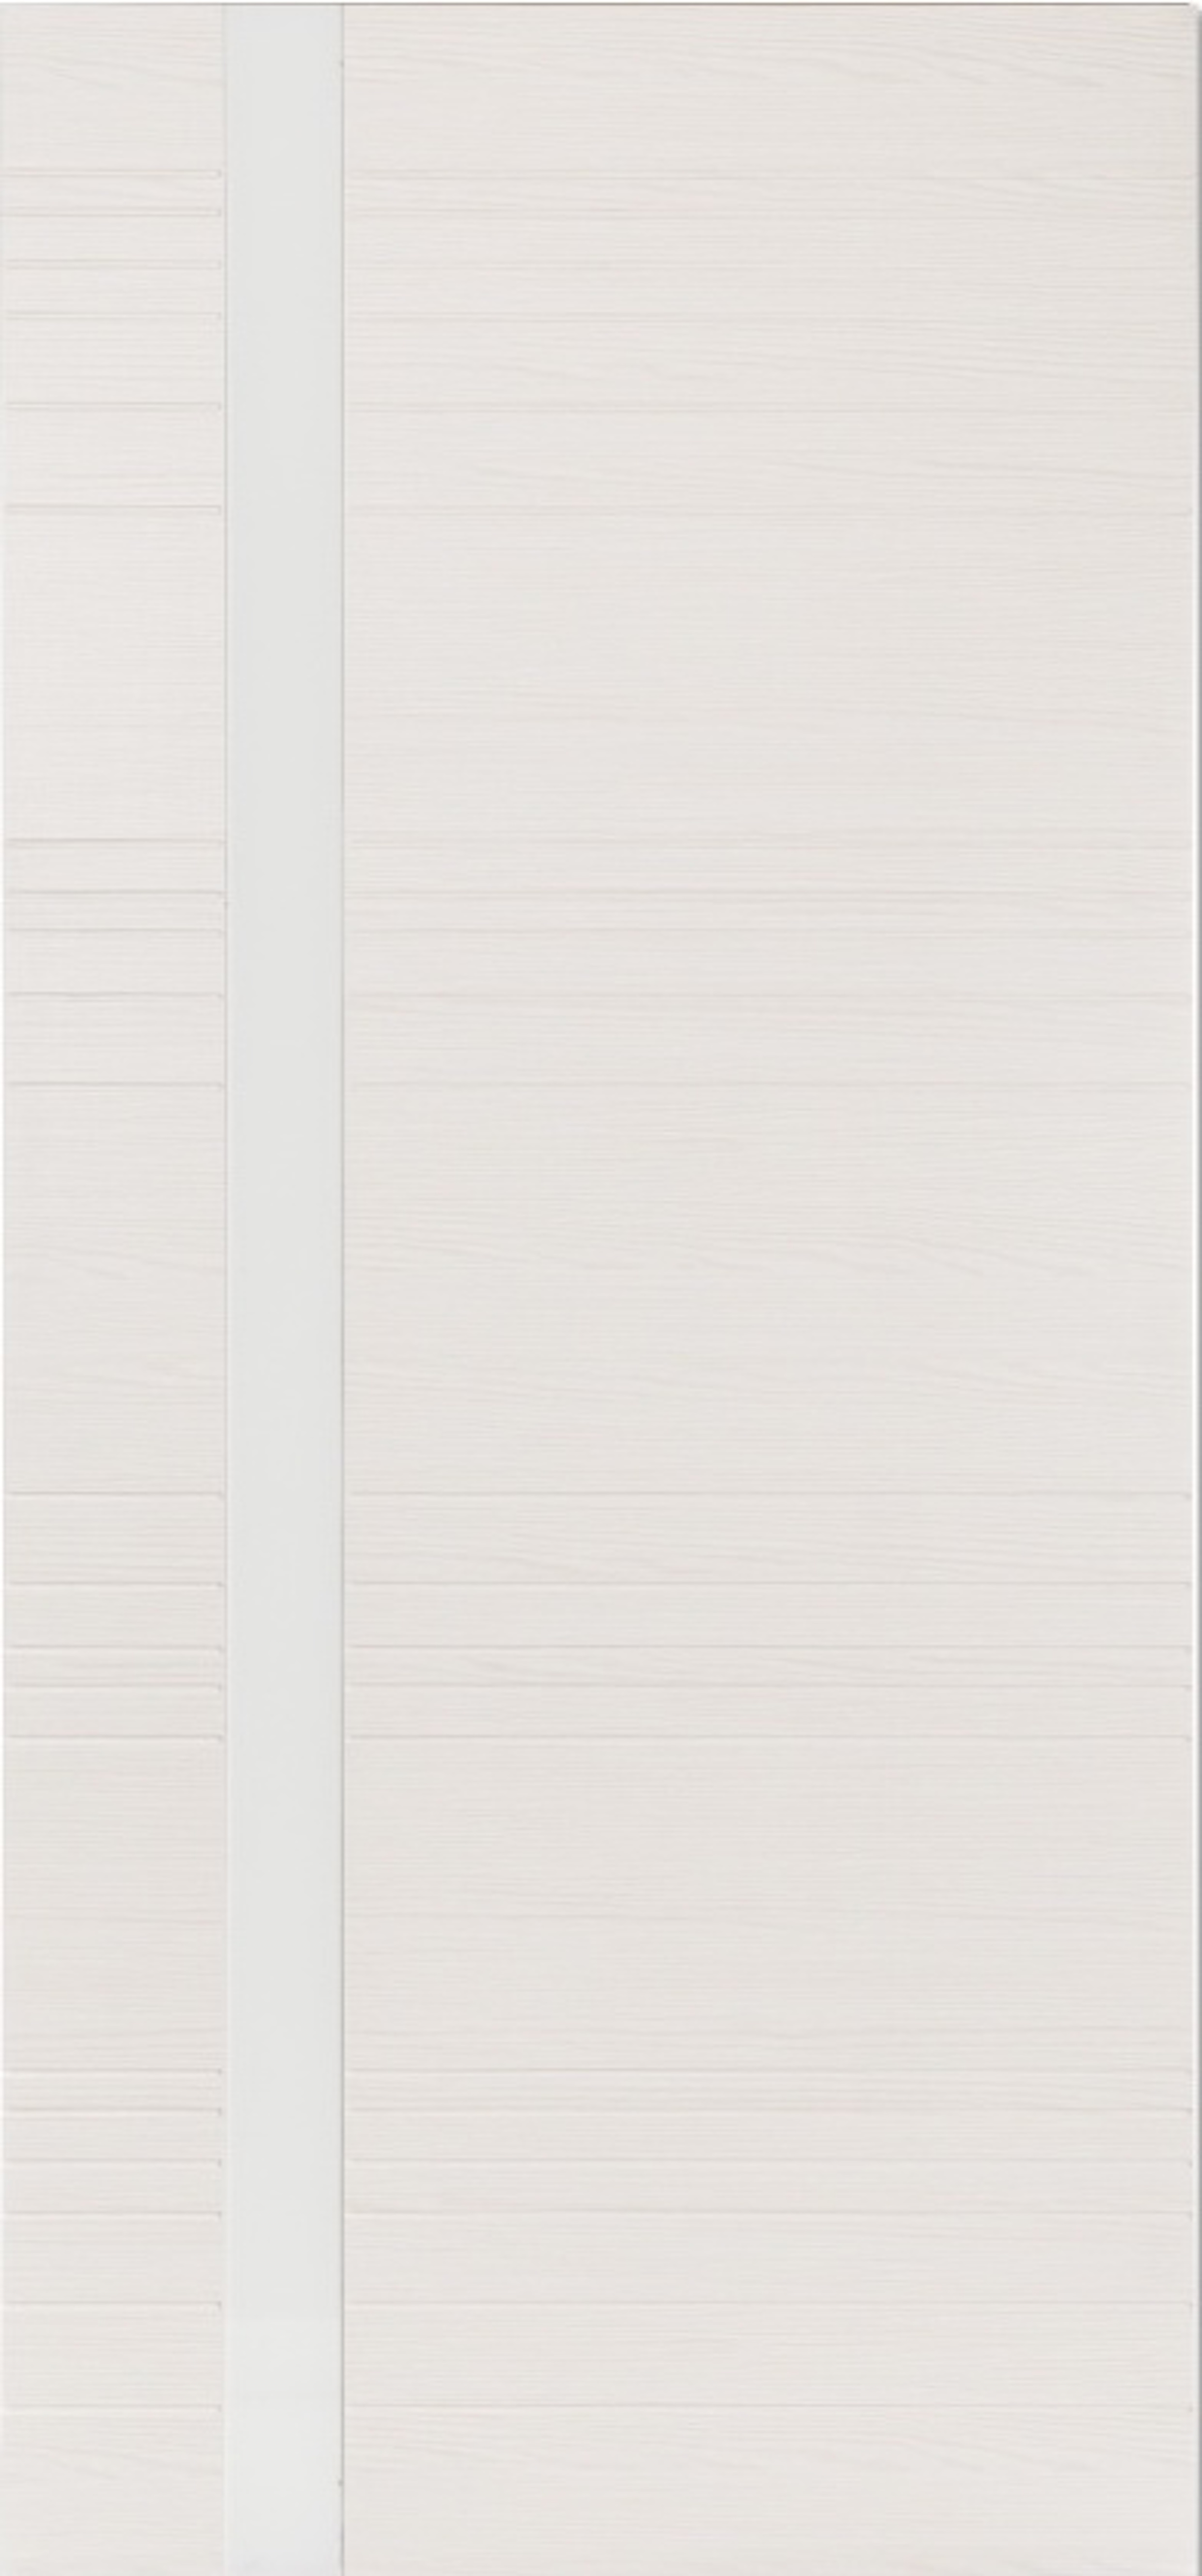 Выставочный двухцветный образец Гармония ПВХ белёный дуб / венге 200х70-ДО (белое / чёрное)